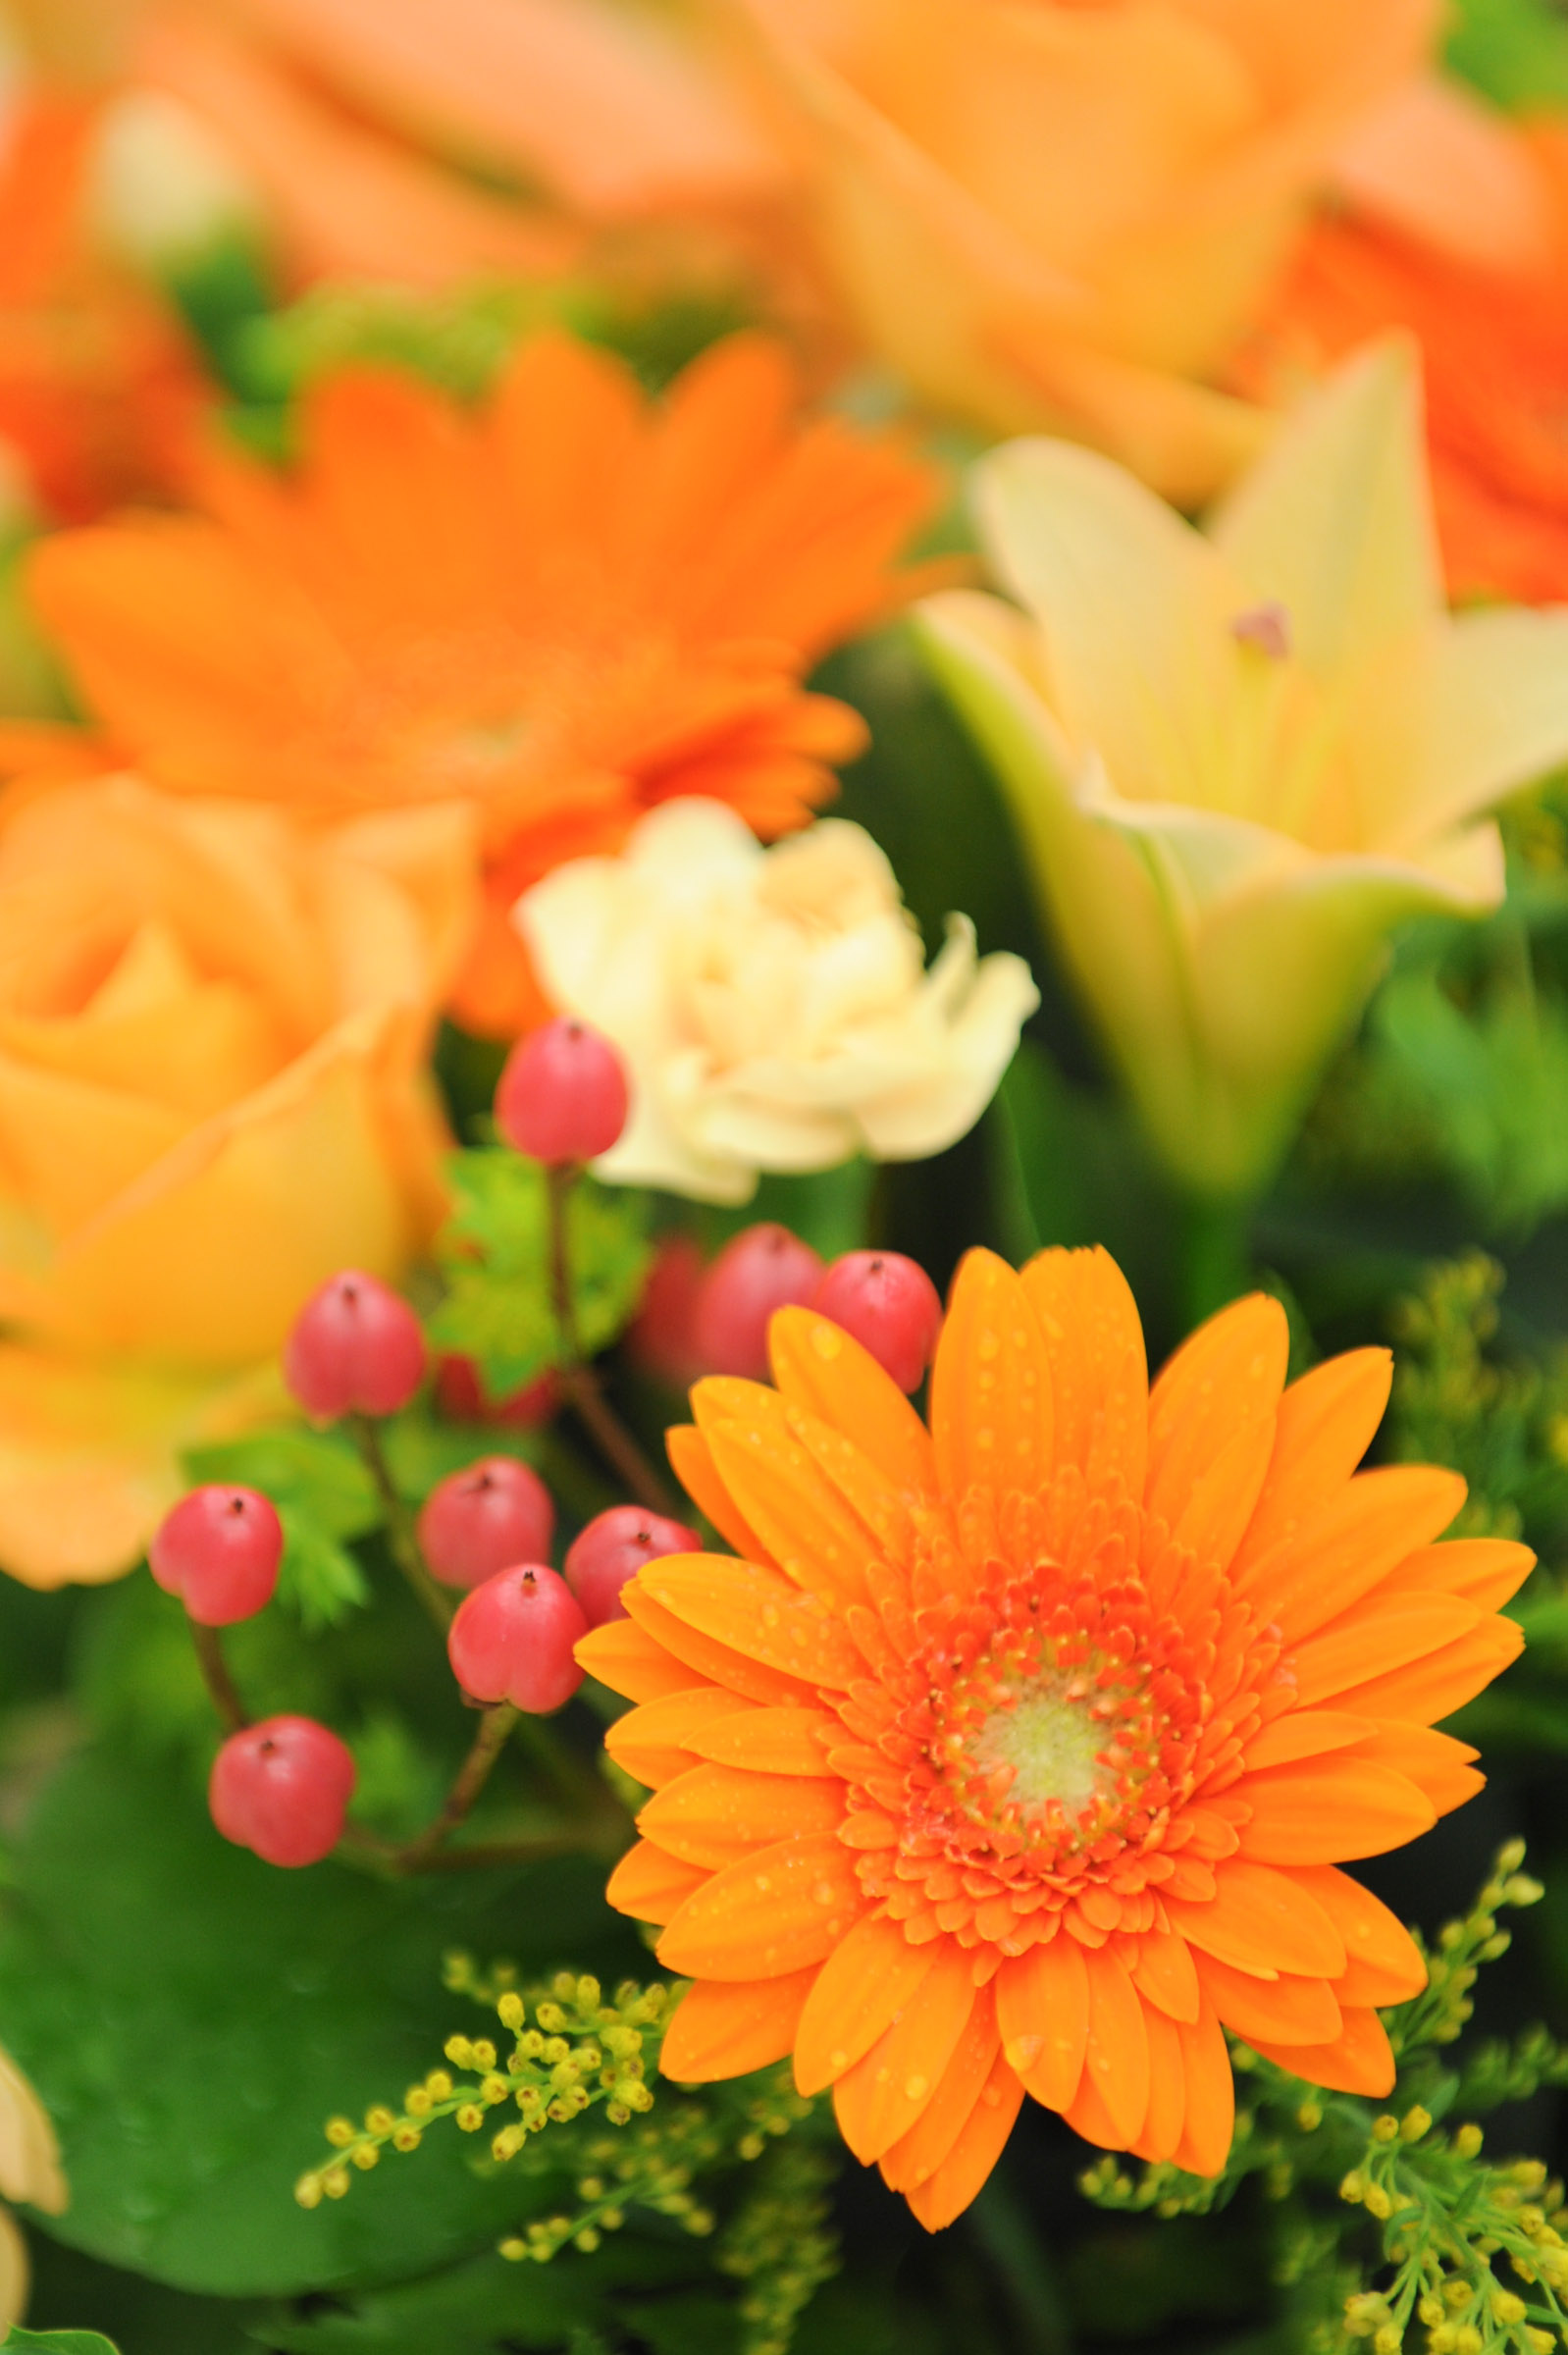 水滴が付いた綺麗なオレンジ色の花と他の花々 Hana 花畑photo フリー 無料 の写真素材 壁紙置き場